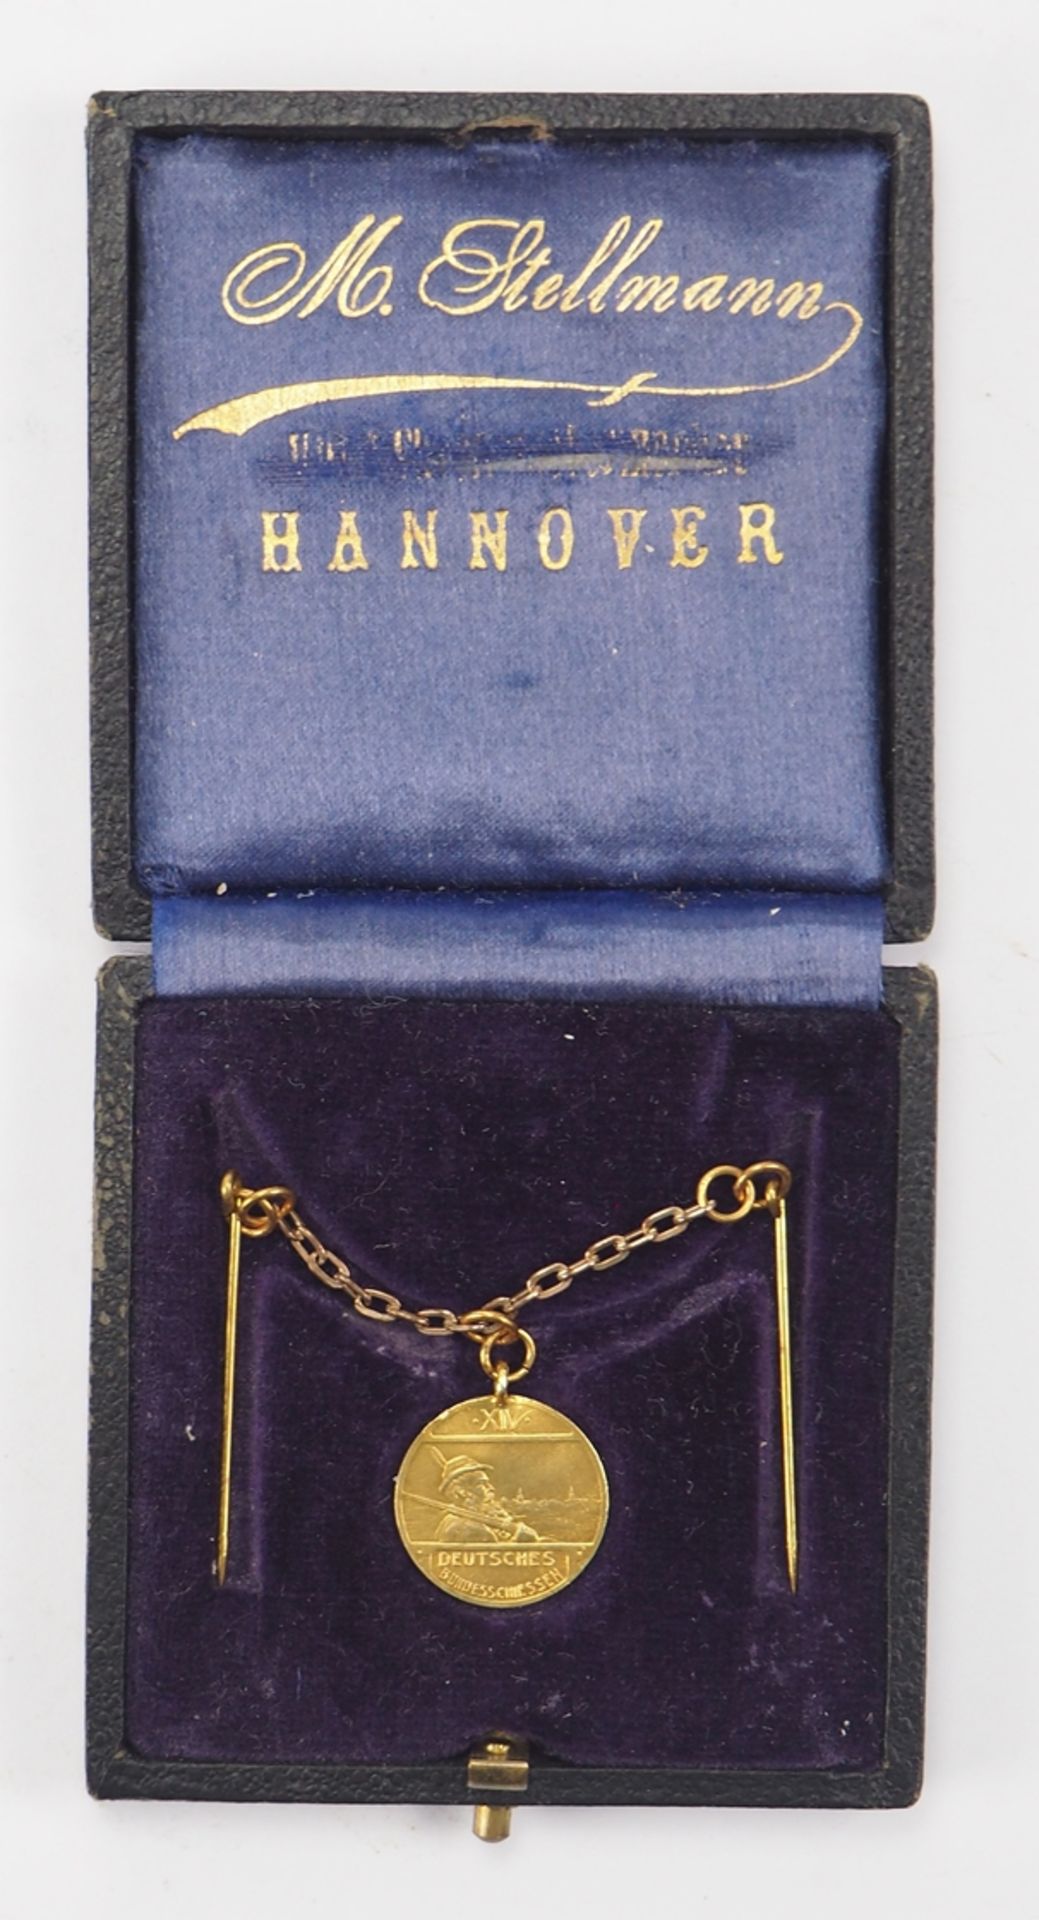 Hannover: Medaille auf das Deutsche Bundesschießen, in Gold, im Etui. - Bild 2 aus 3